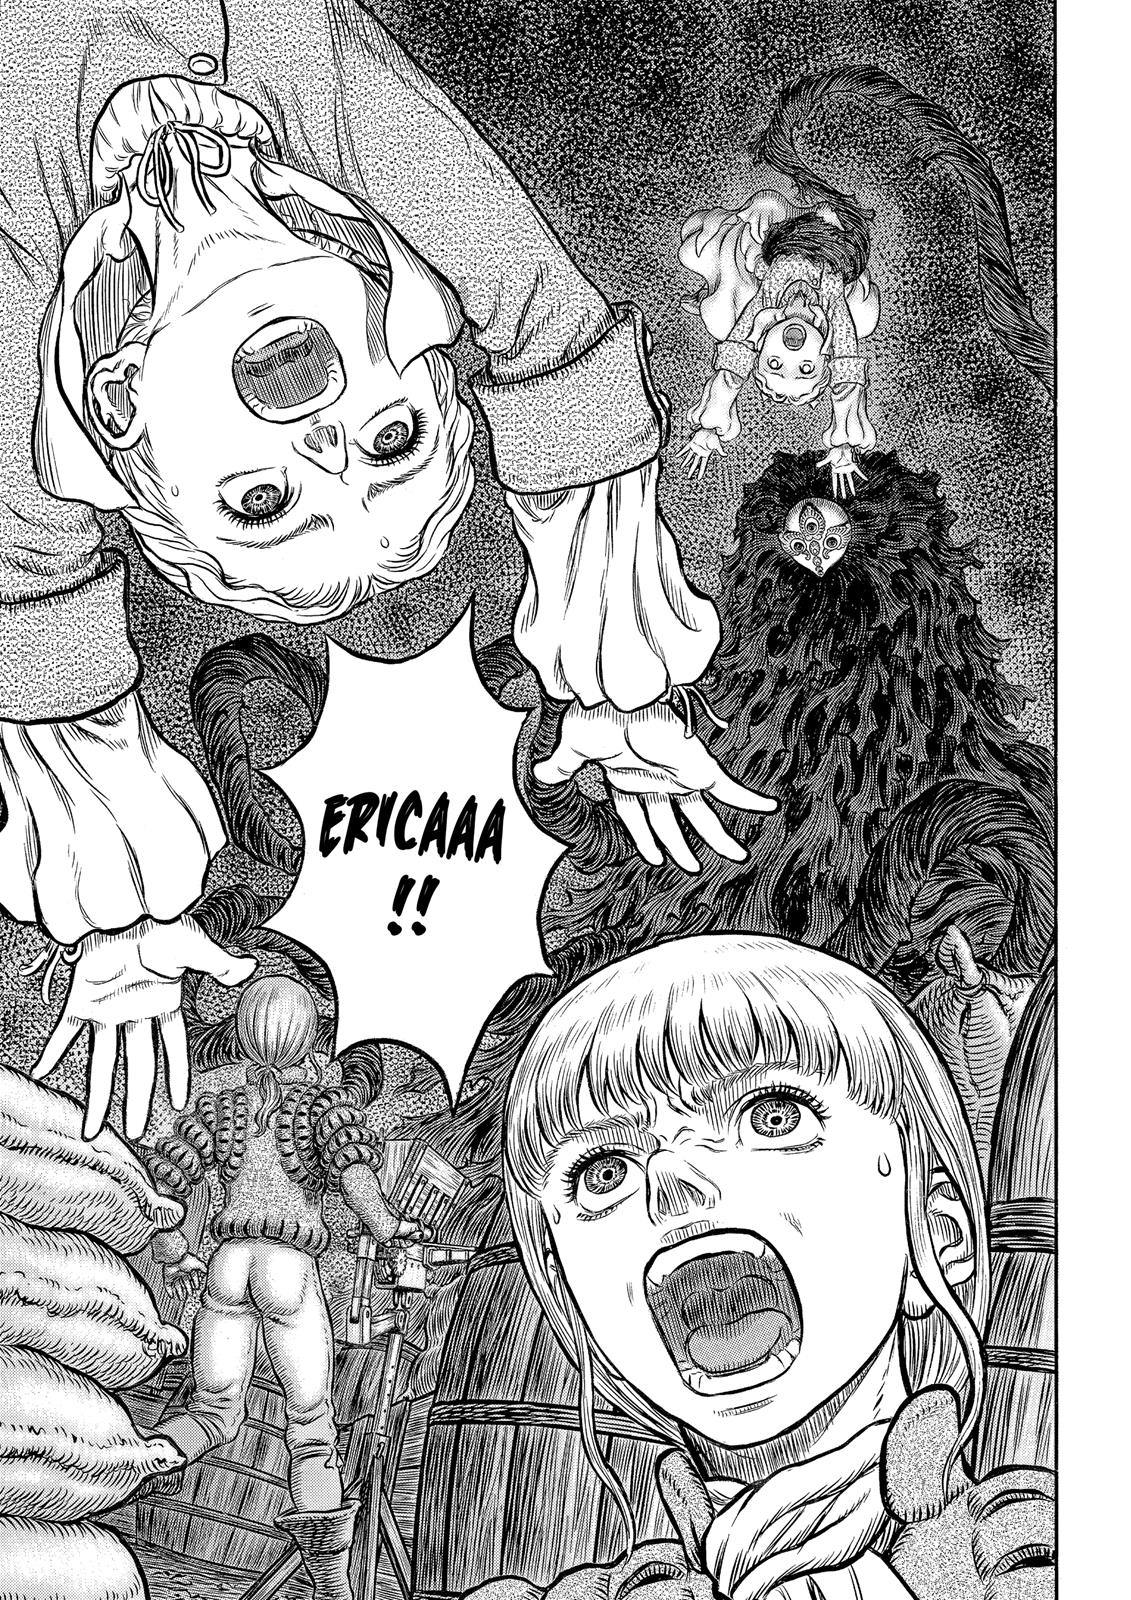 Berserk Manga Chapter 341 image 02